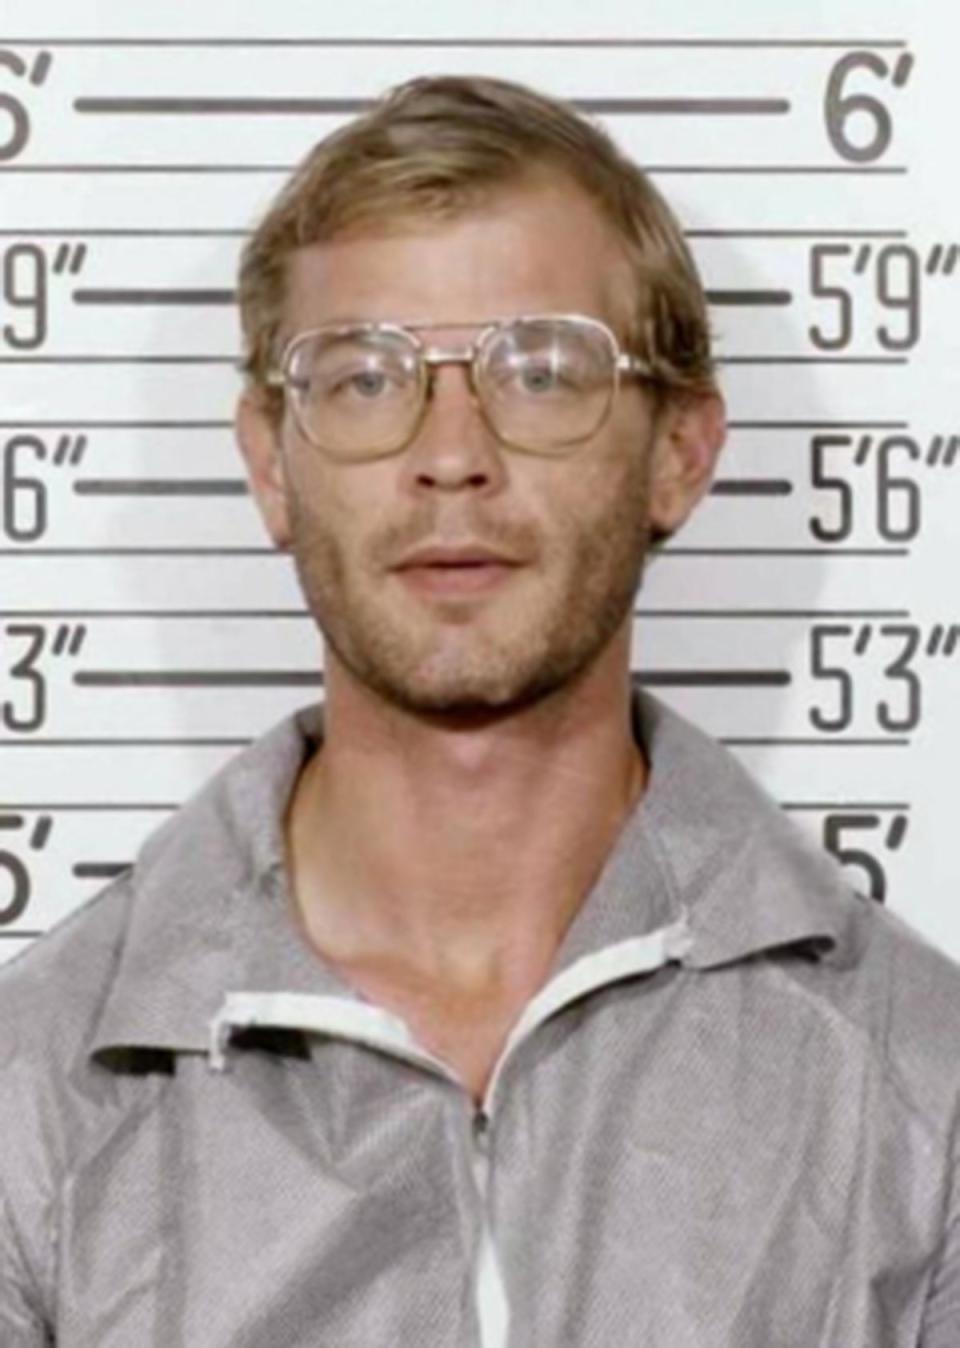 Foto policial de Jeffrey Dahmer luego de su arresto en 1991 (Departamento de Policía de Milwaukee)